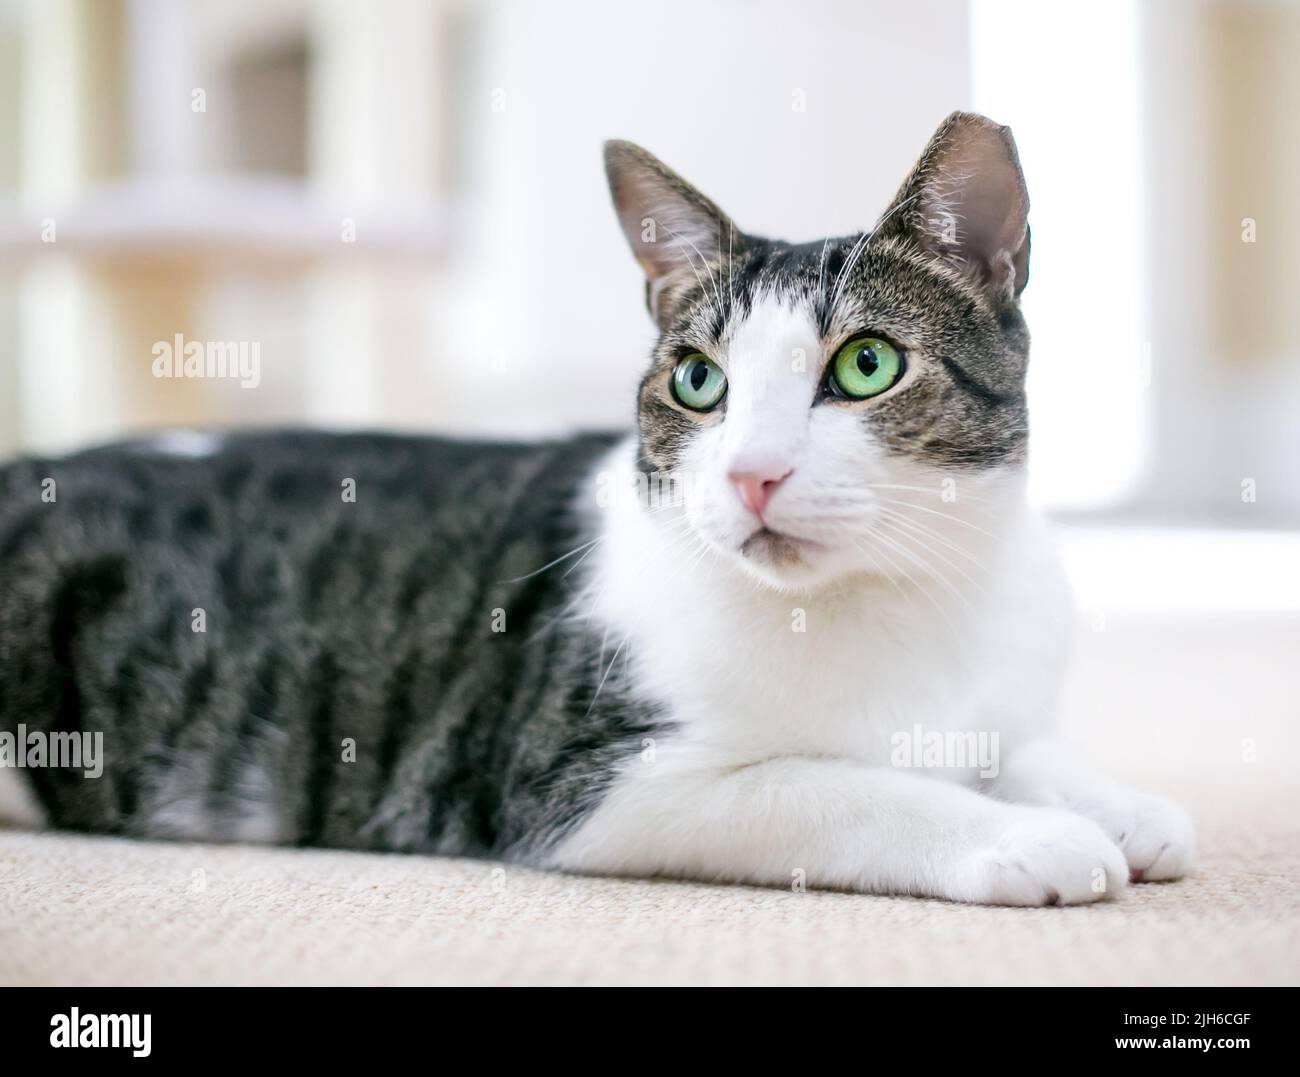 Un gato shorthair con ojos verdes y su oído izquierdo inclinado acostado en una postura relajada Foto de stock